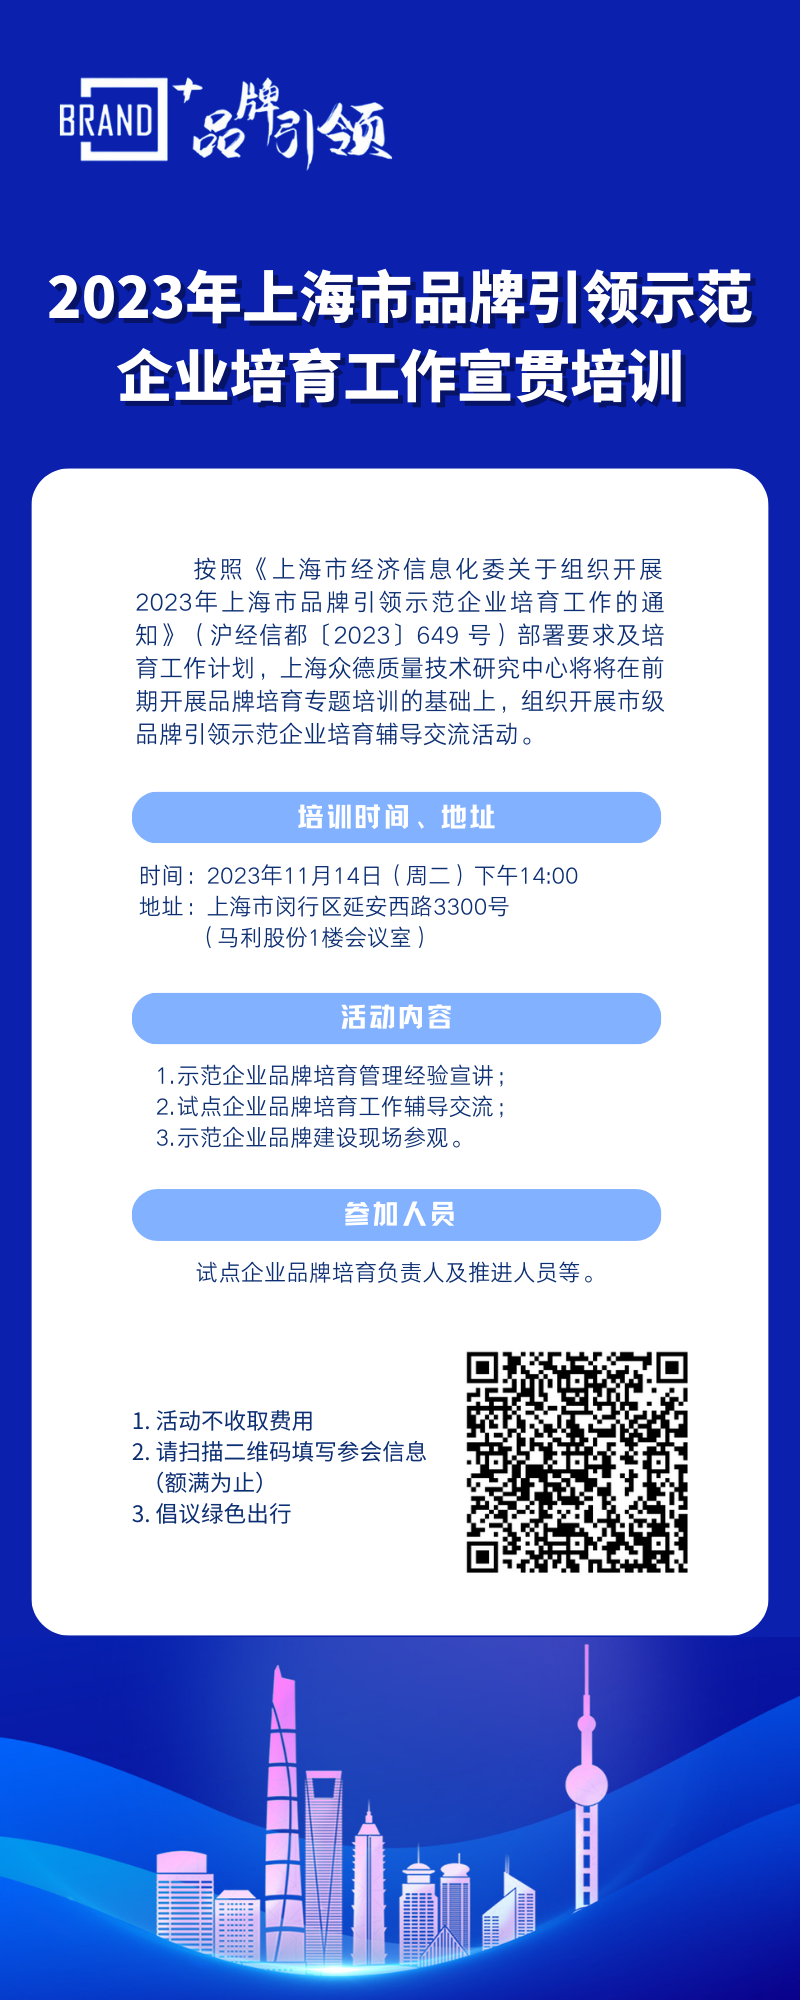 2023年上海市品牌引领示范企业培育工作辅导交流通知（11月14日）.png